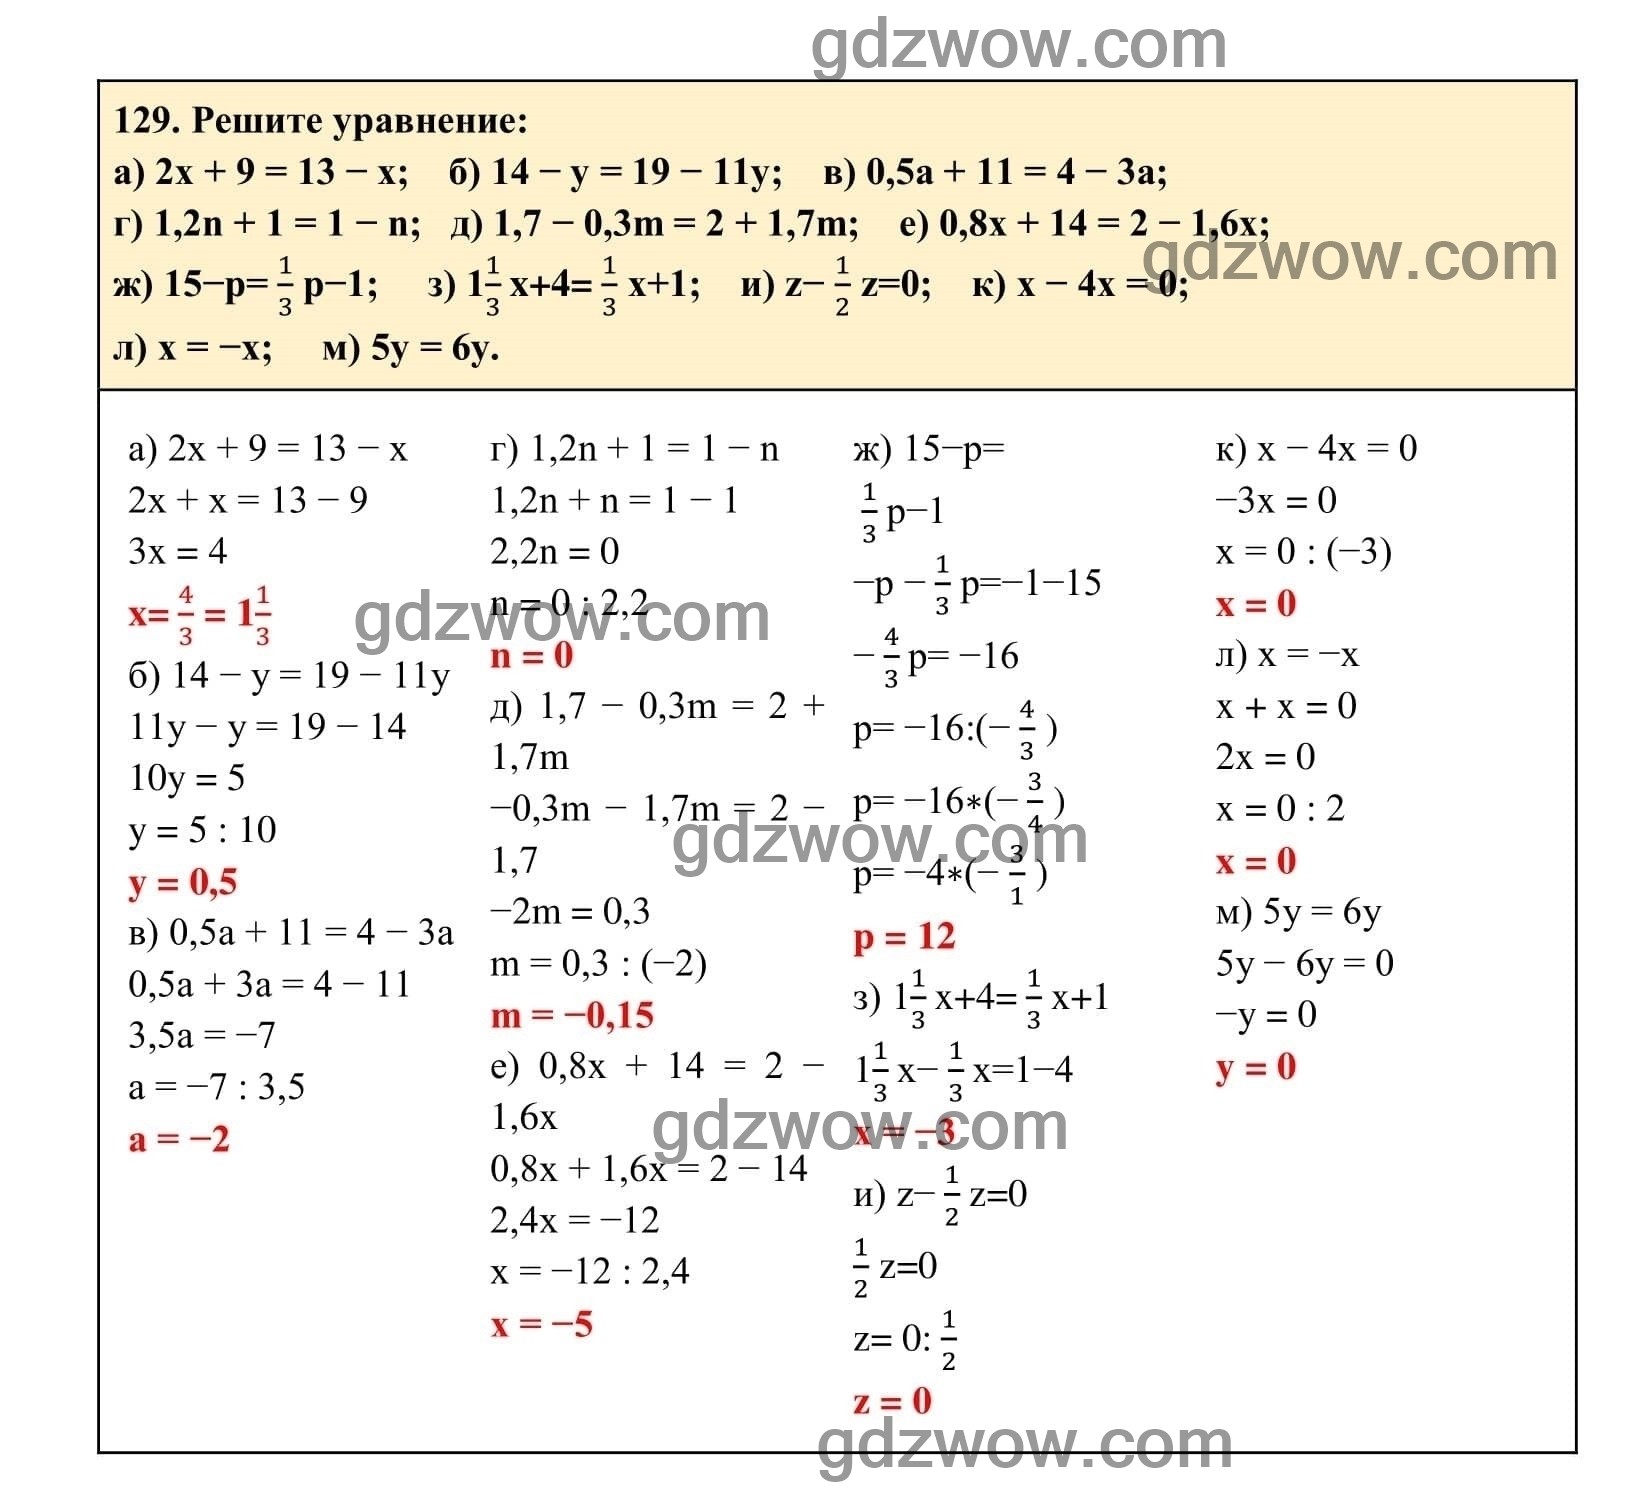 Упражнение 129 - ГДЗ по Алгебре 7 класс Учебник Макарычев (решебник) - GDZwow